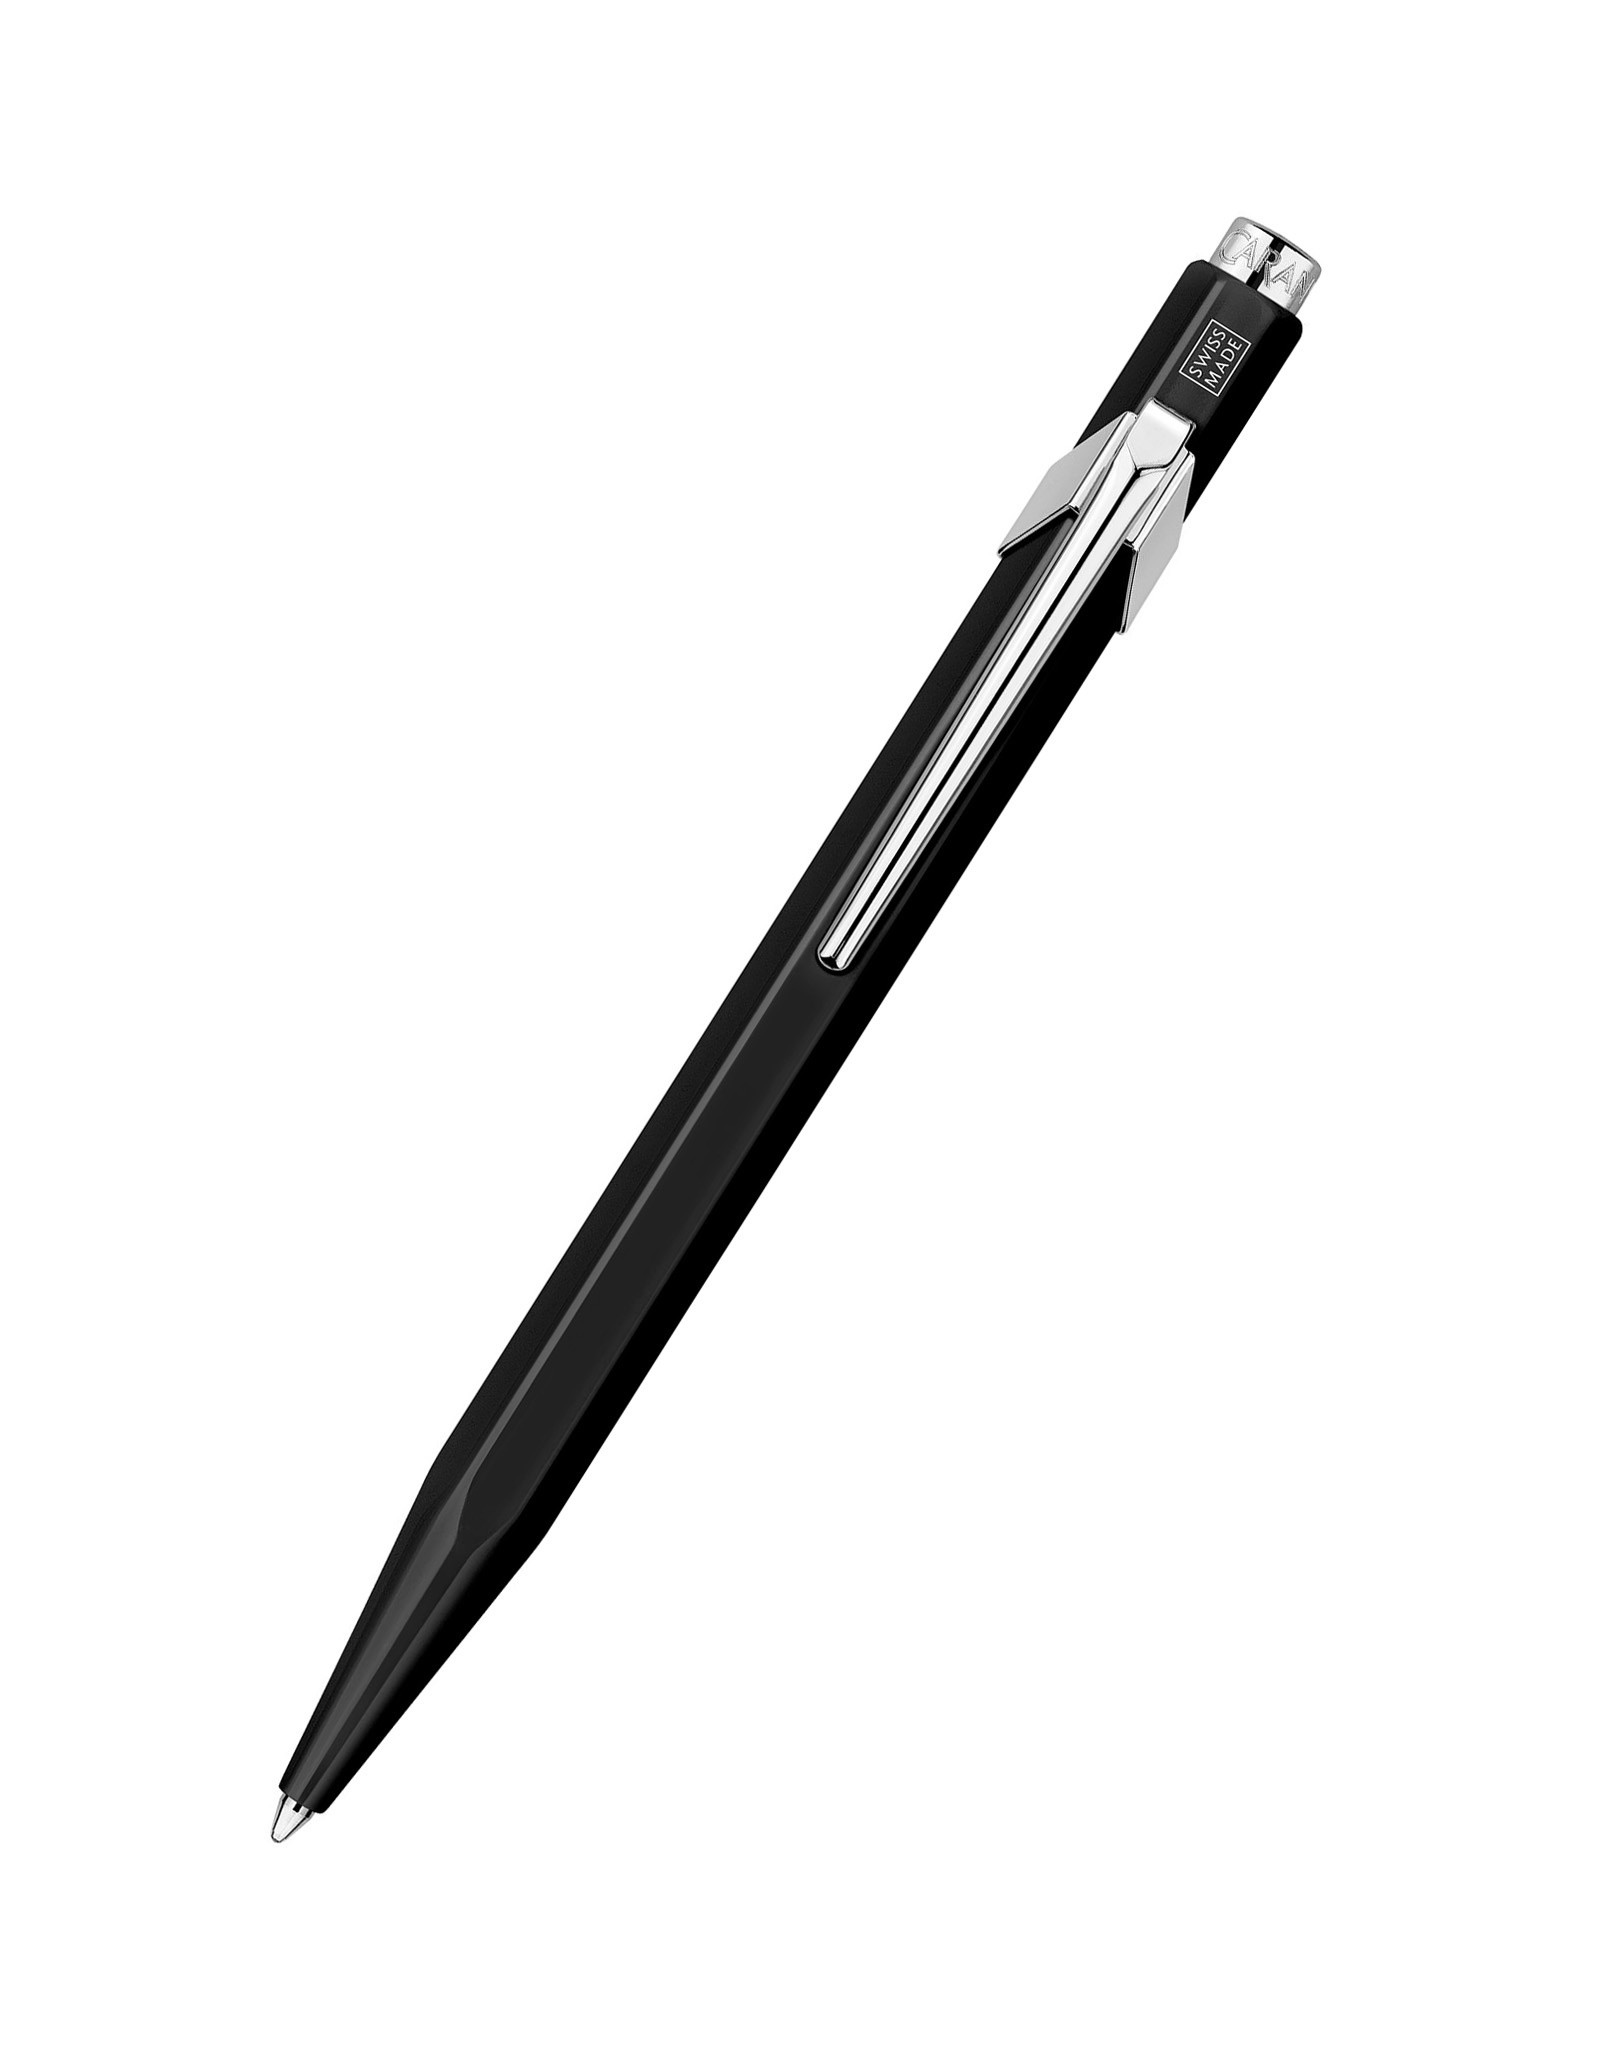 Caran d'Ache Caran D’Ache 849 Ballpoint Pen, Metallic Black